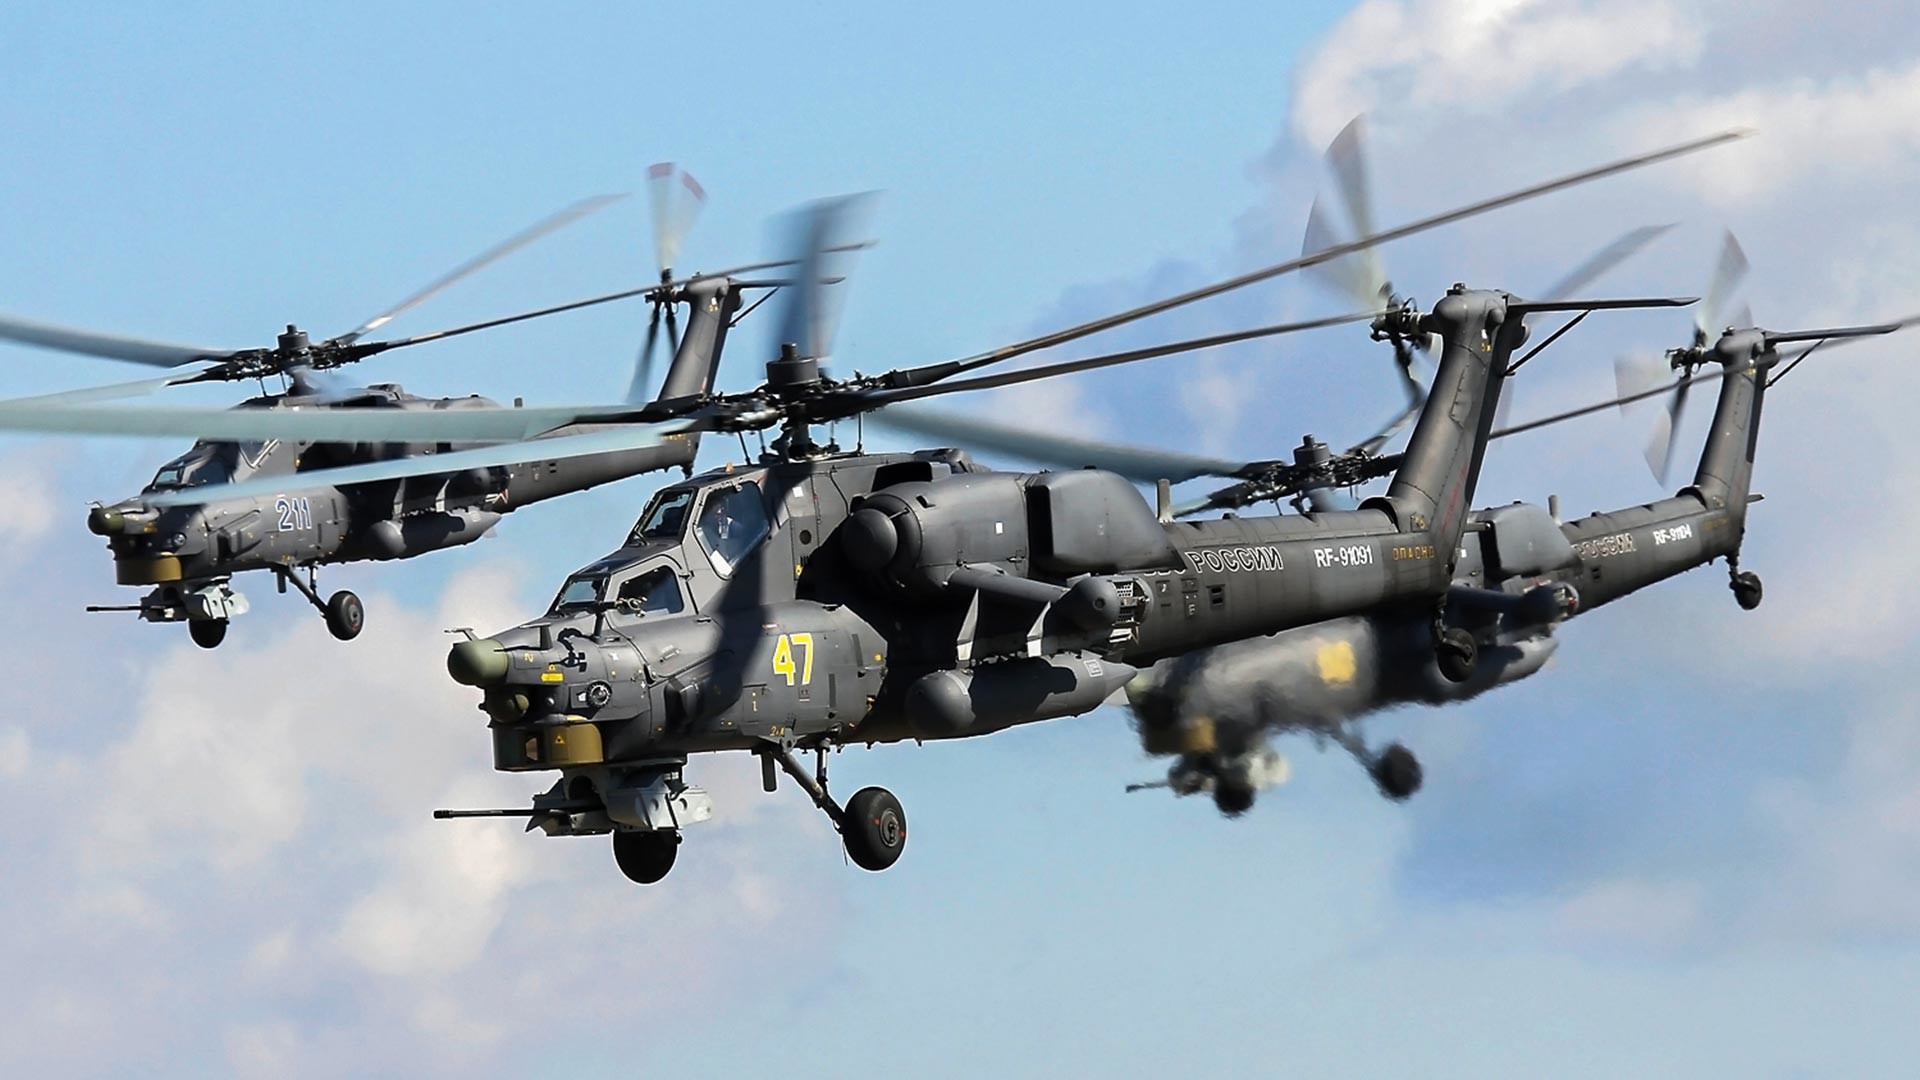 ロシア史上最高のヘリコプター5選 - ロシア・ビヨンド